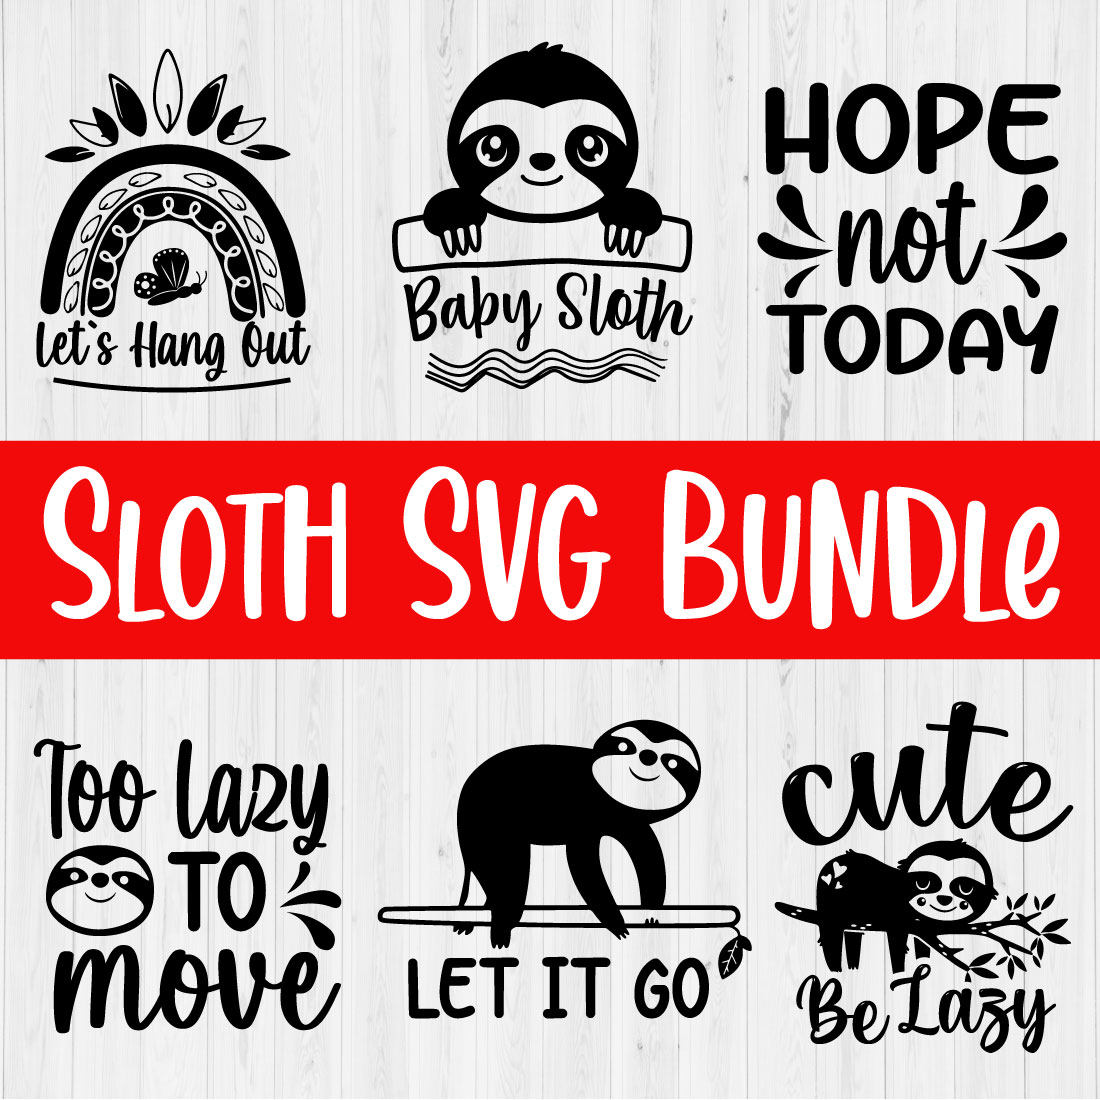 Sloth Svg Design Bundle Vol2 cover image.